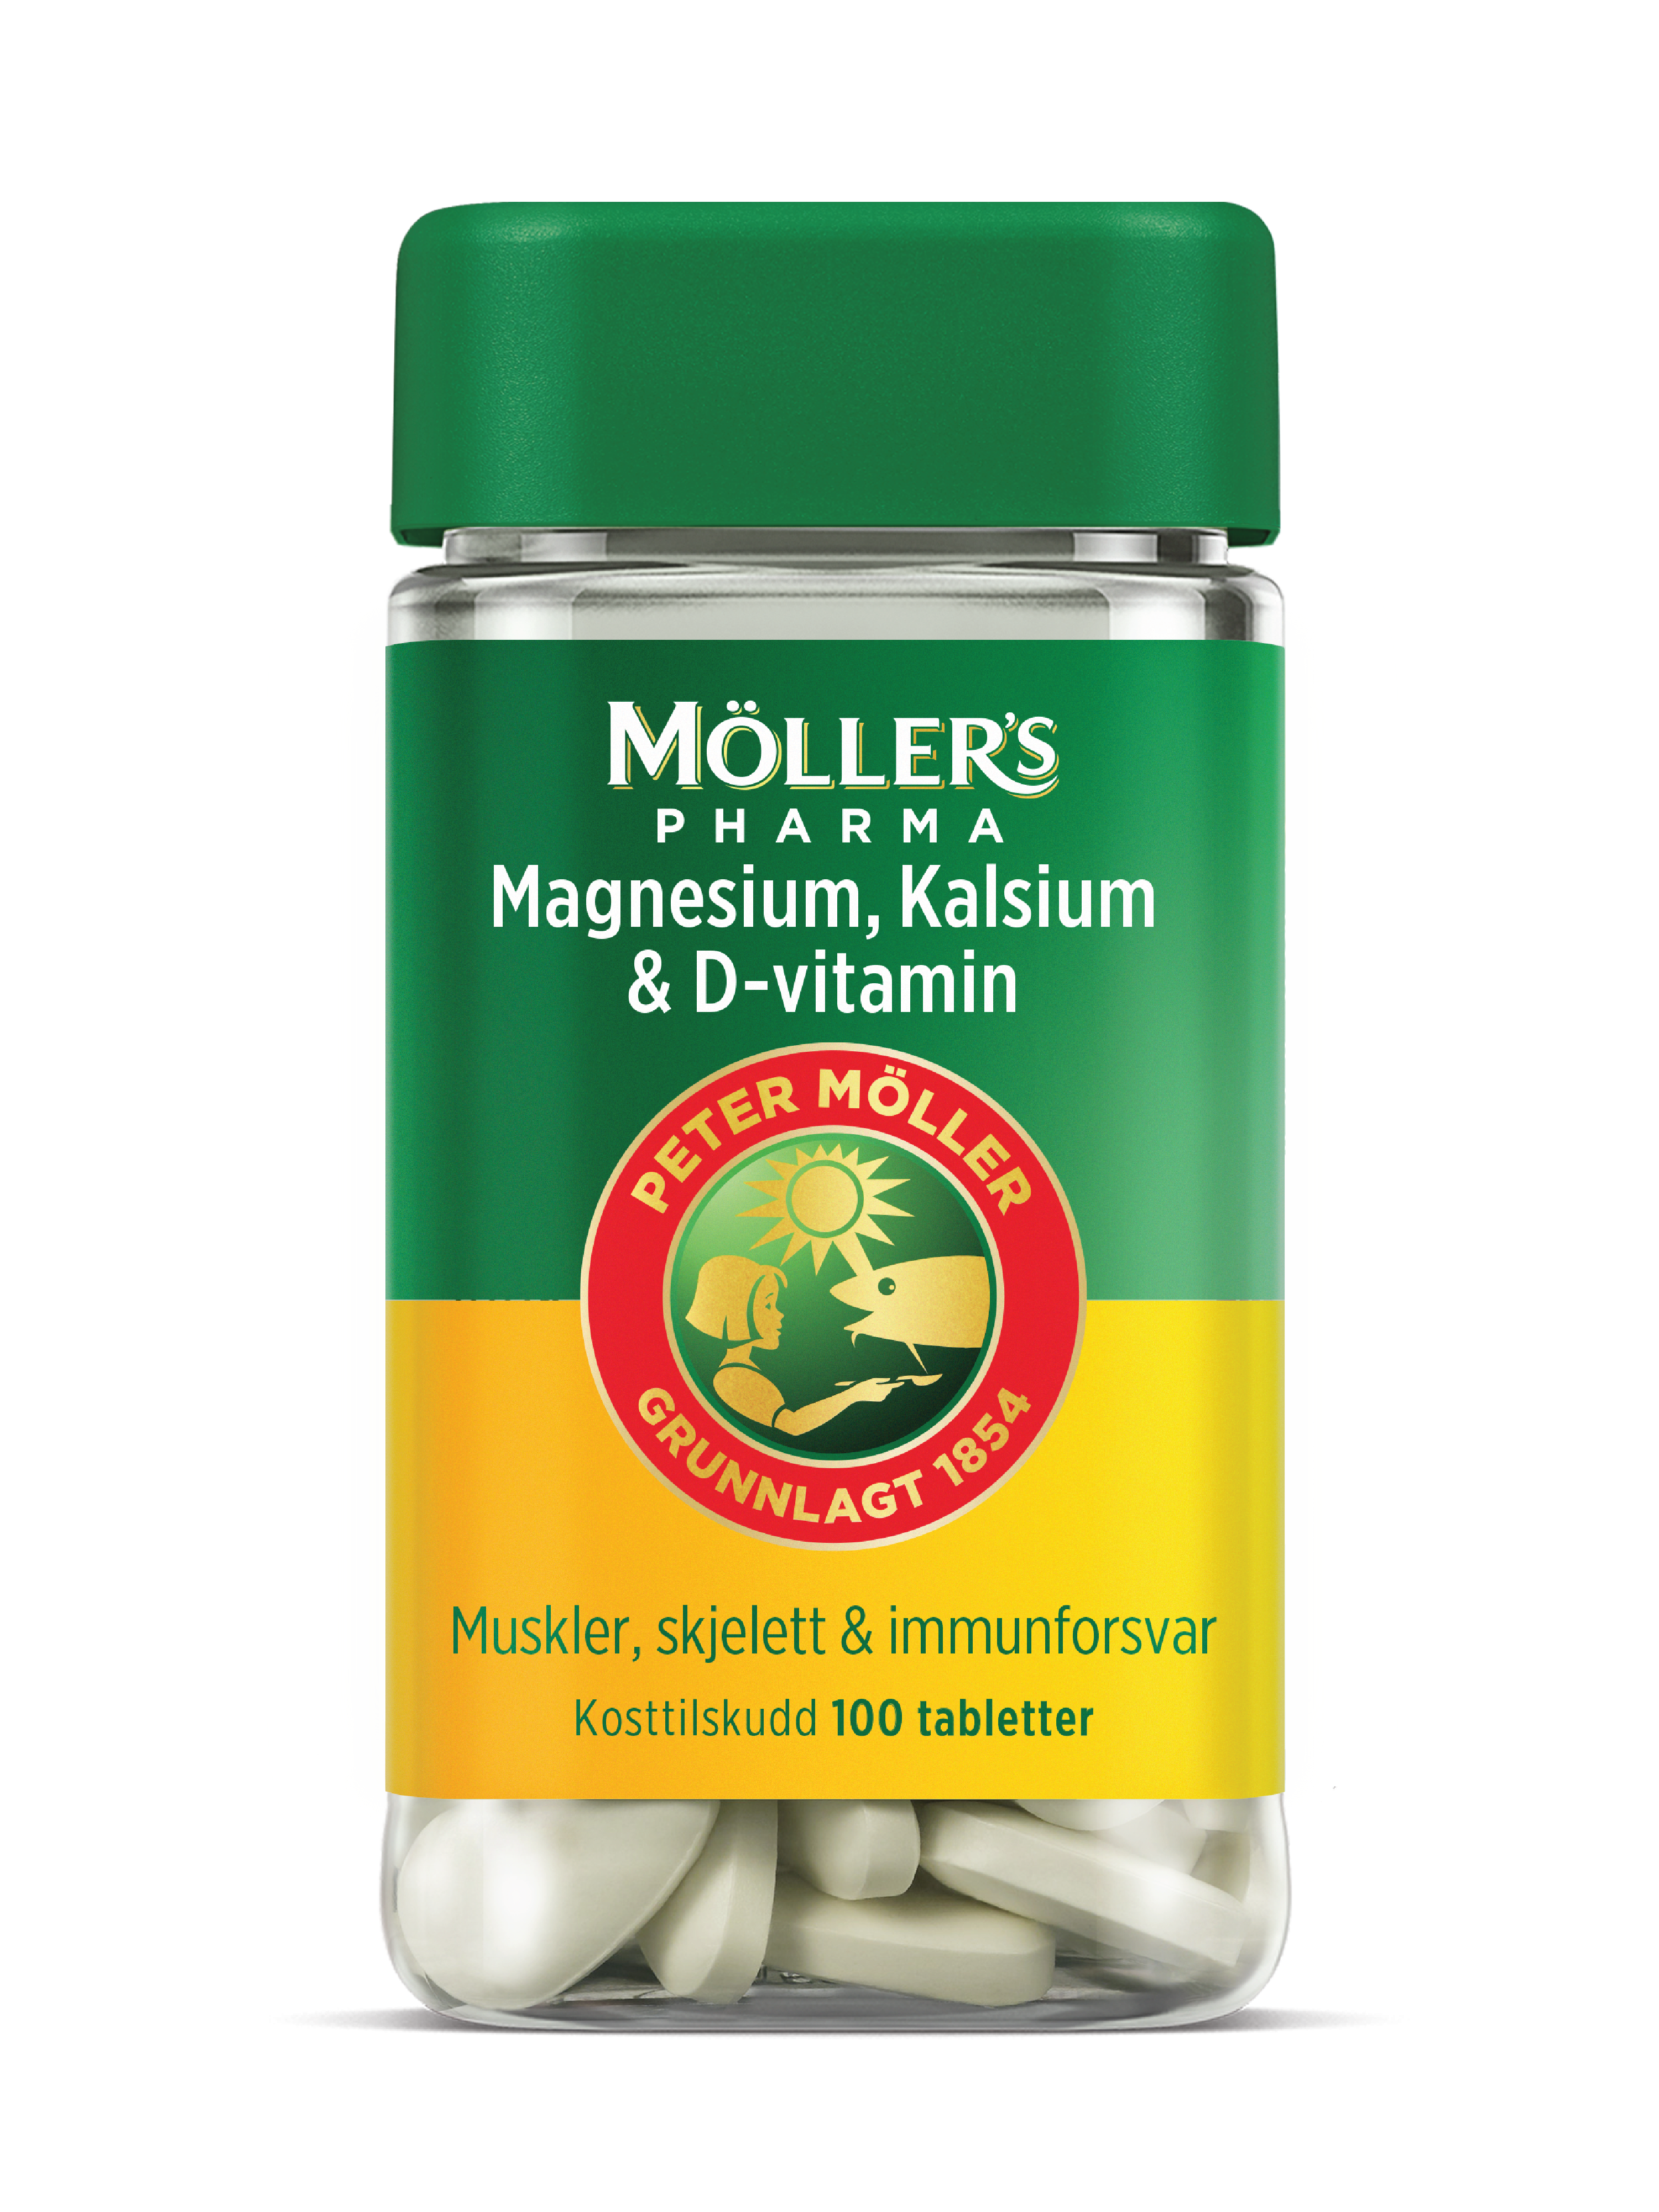 Möller's Pharma Magnesium, Kalsium & D-vitamin tabletter, 100 stk.